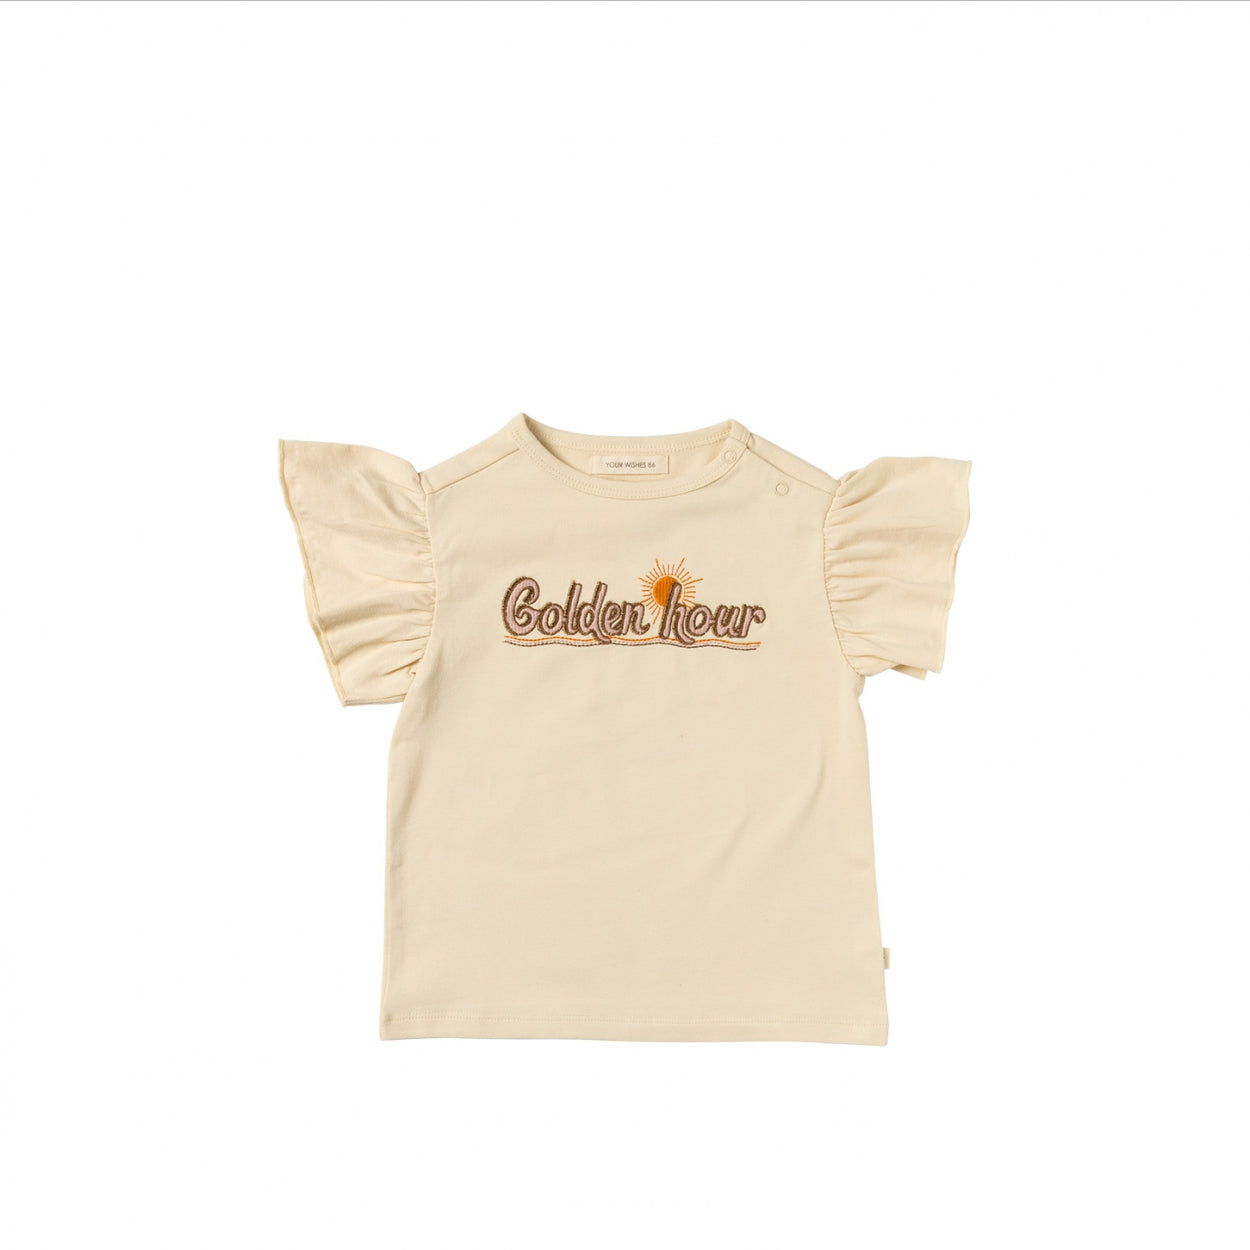 Meisjes Shirt shortsleeve Golden Hour | Jazz van Your Wishes in de kleur Honeycomb in maat 128.